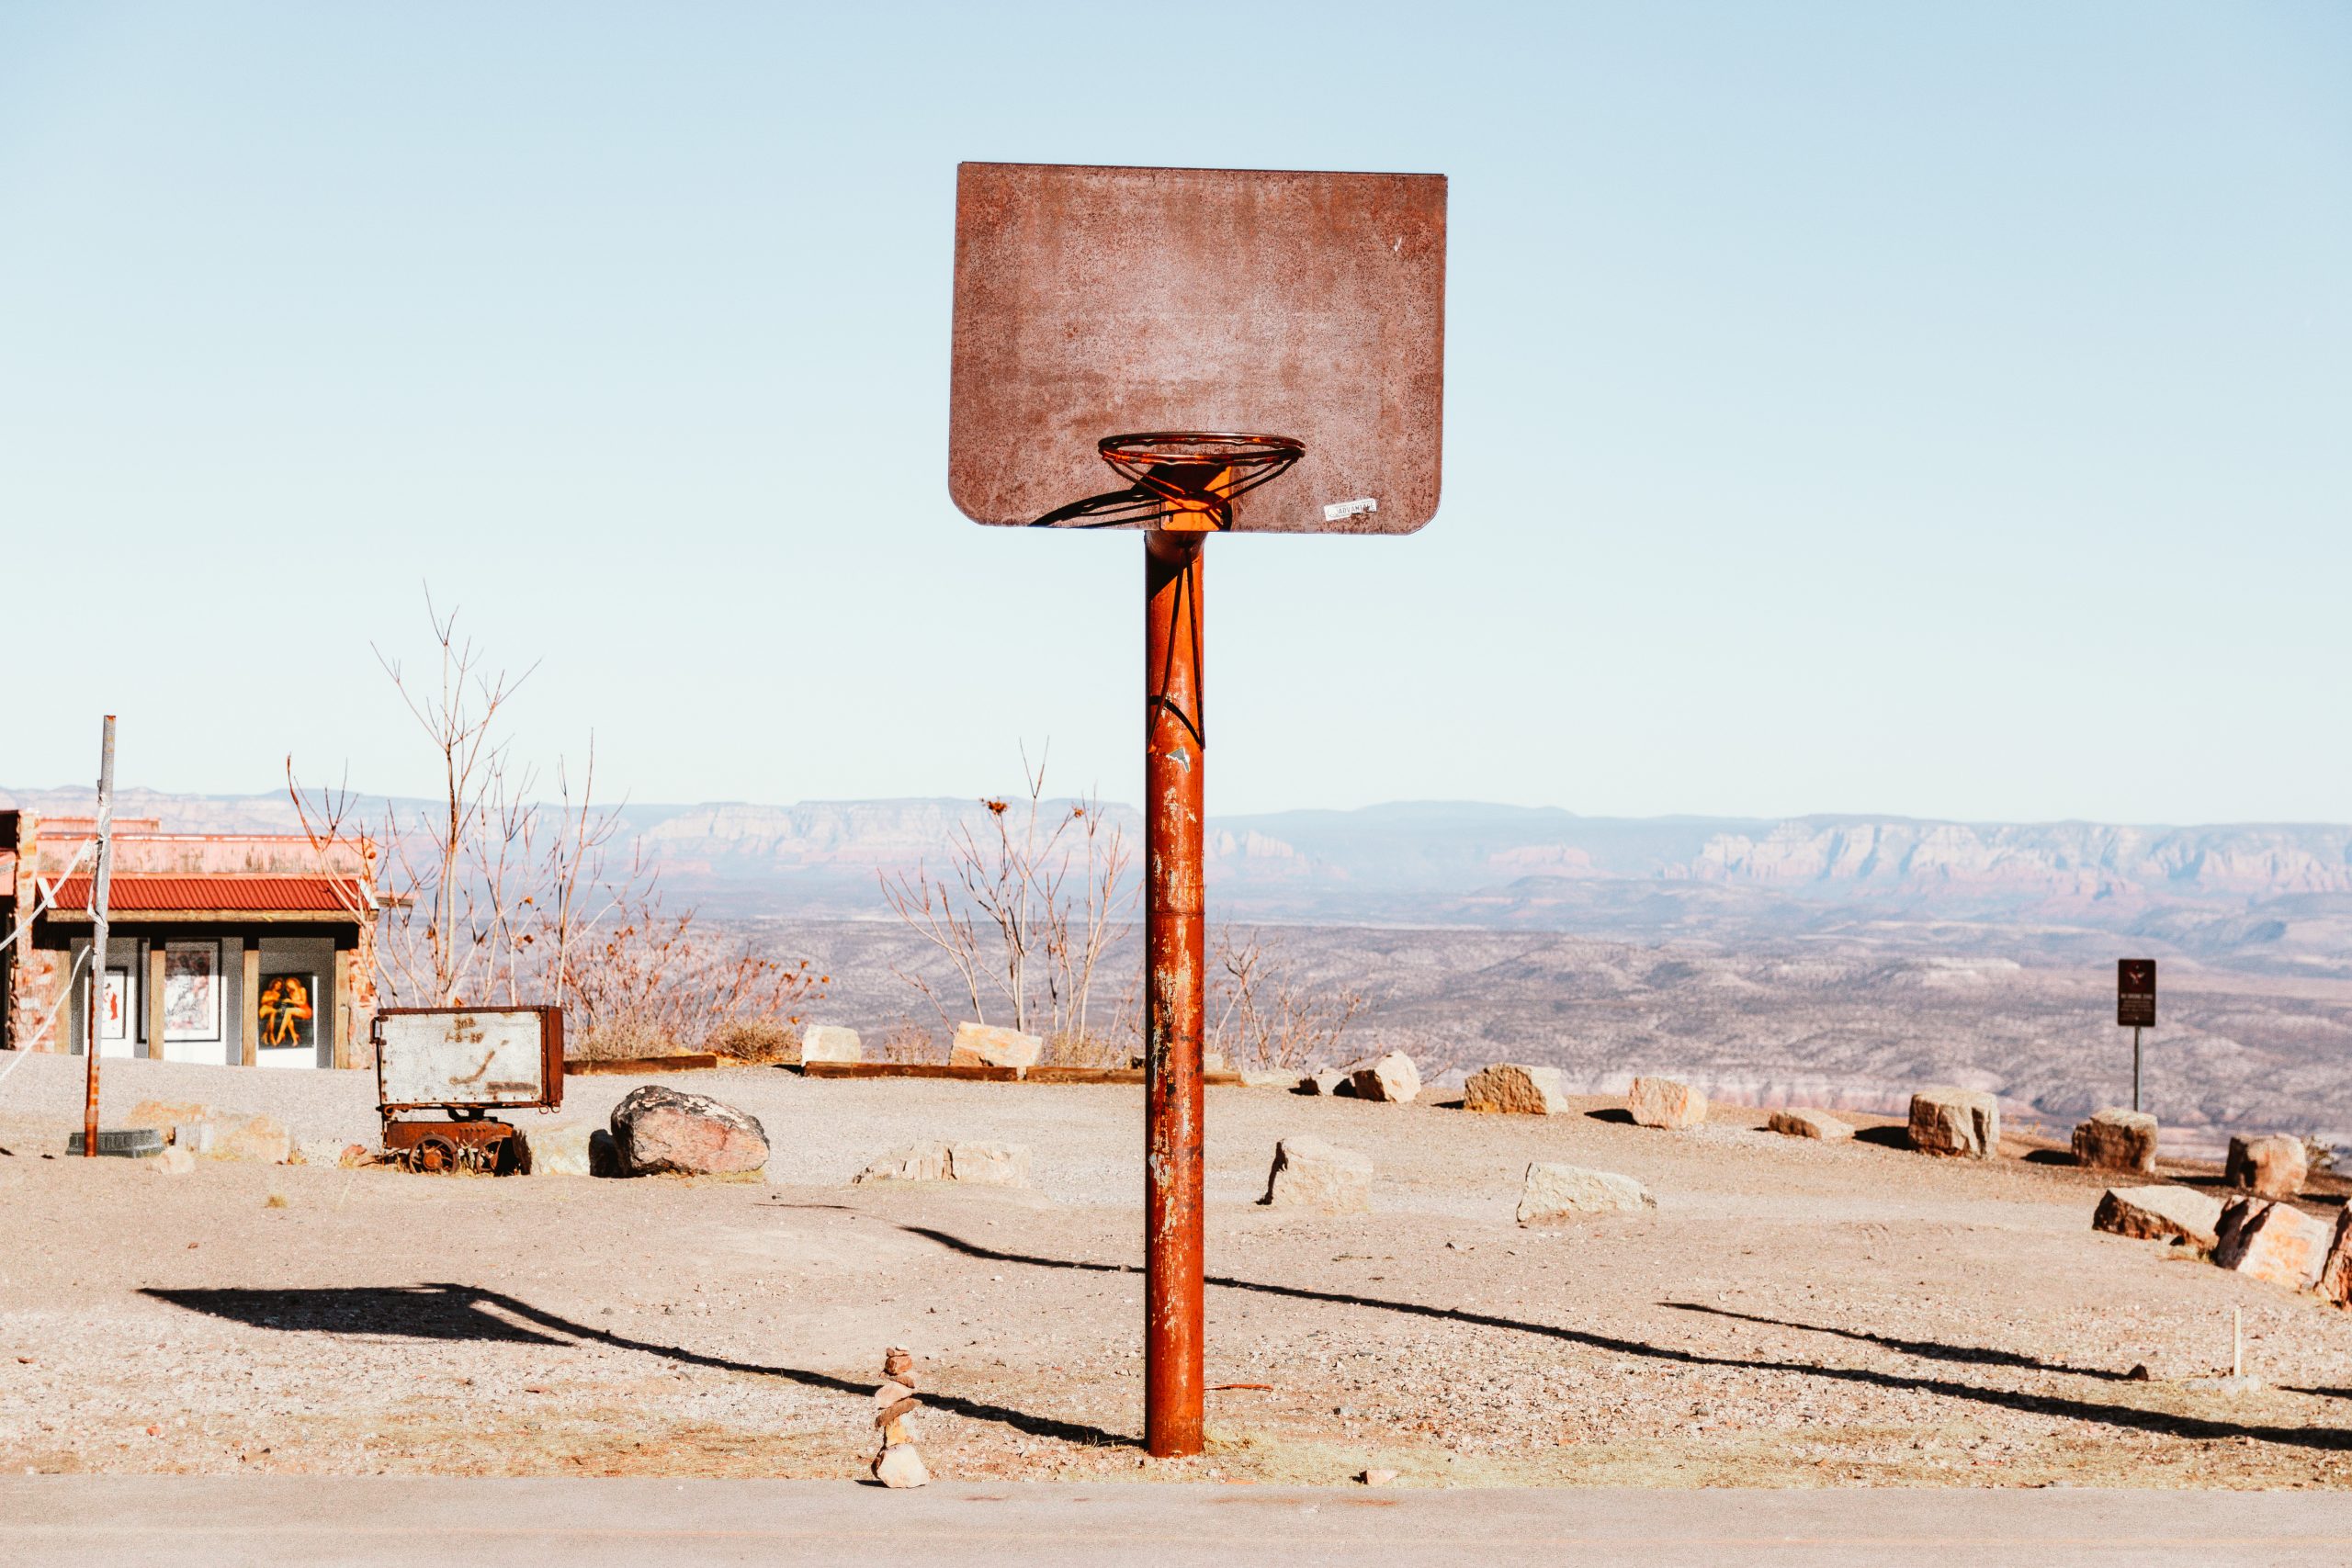 abandoned-basketball-hoop-2022-11-01-08-26-56-utc